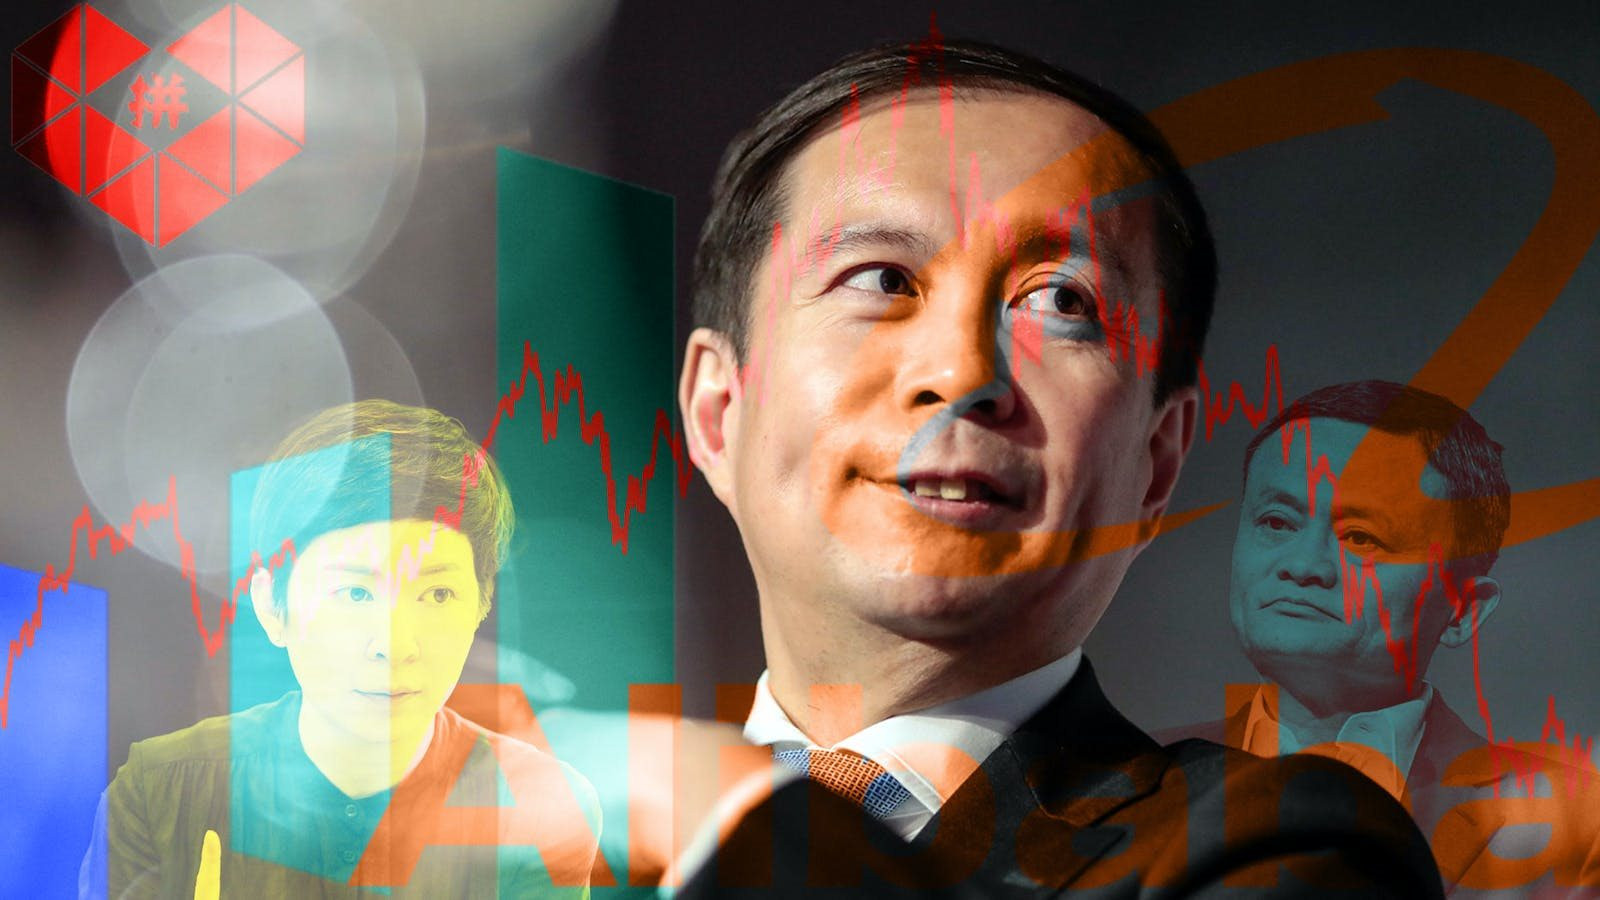 Đế chế Alibaba rung lắc mạnh: Cựu kiểm toán viên từng được Jack Ma chọn làm Chủ tịch bất ngờ bị mất toàn bộ chức vụ, nội bộ công ty cũng sốc - Ảnh 1.